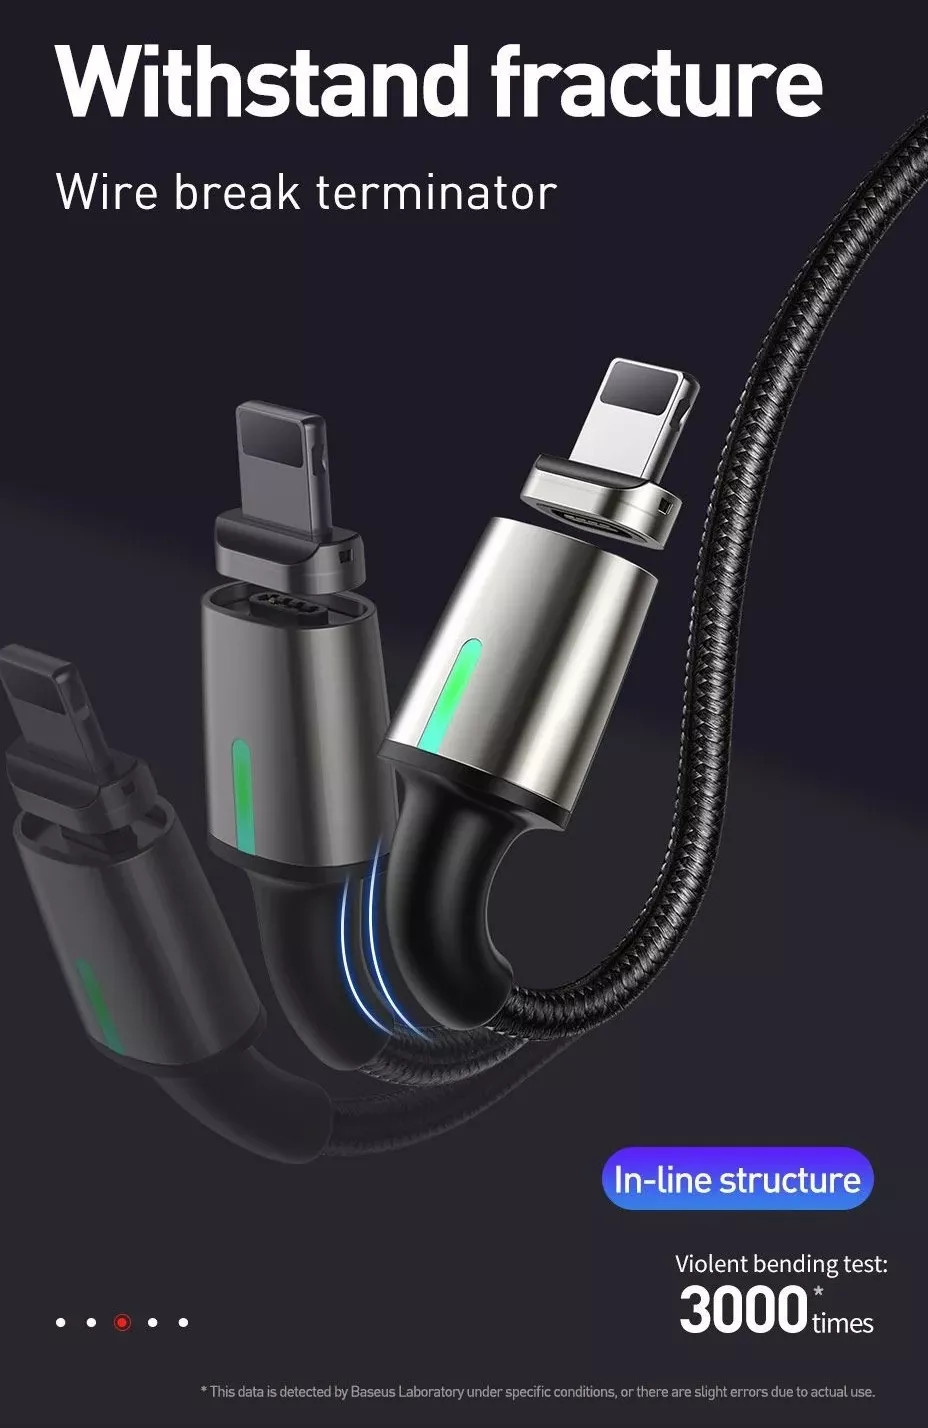 Bộ dây cáp sạc nhanh 3A và 3 đầu sạc từ tính Lightning / Type-C / Micro USB hiệu Baseus Zinc Magnetic Series 2 Cable Kit 